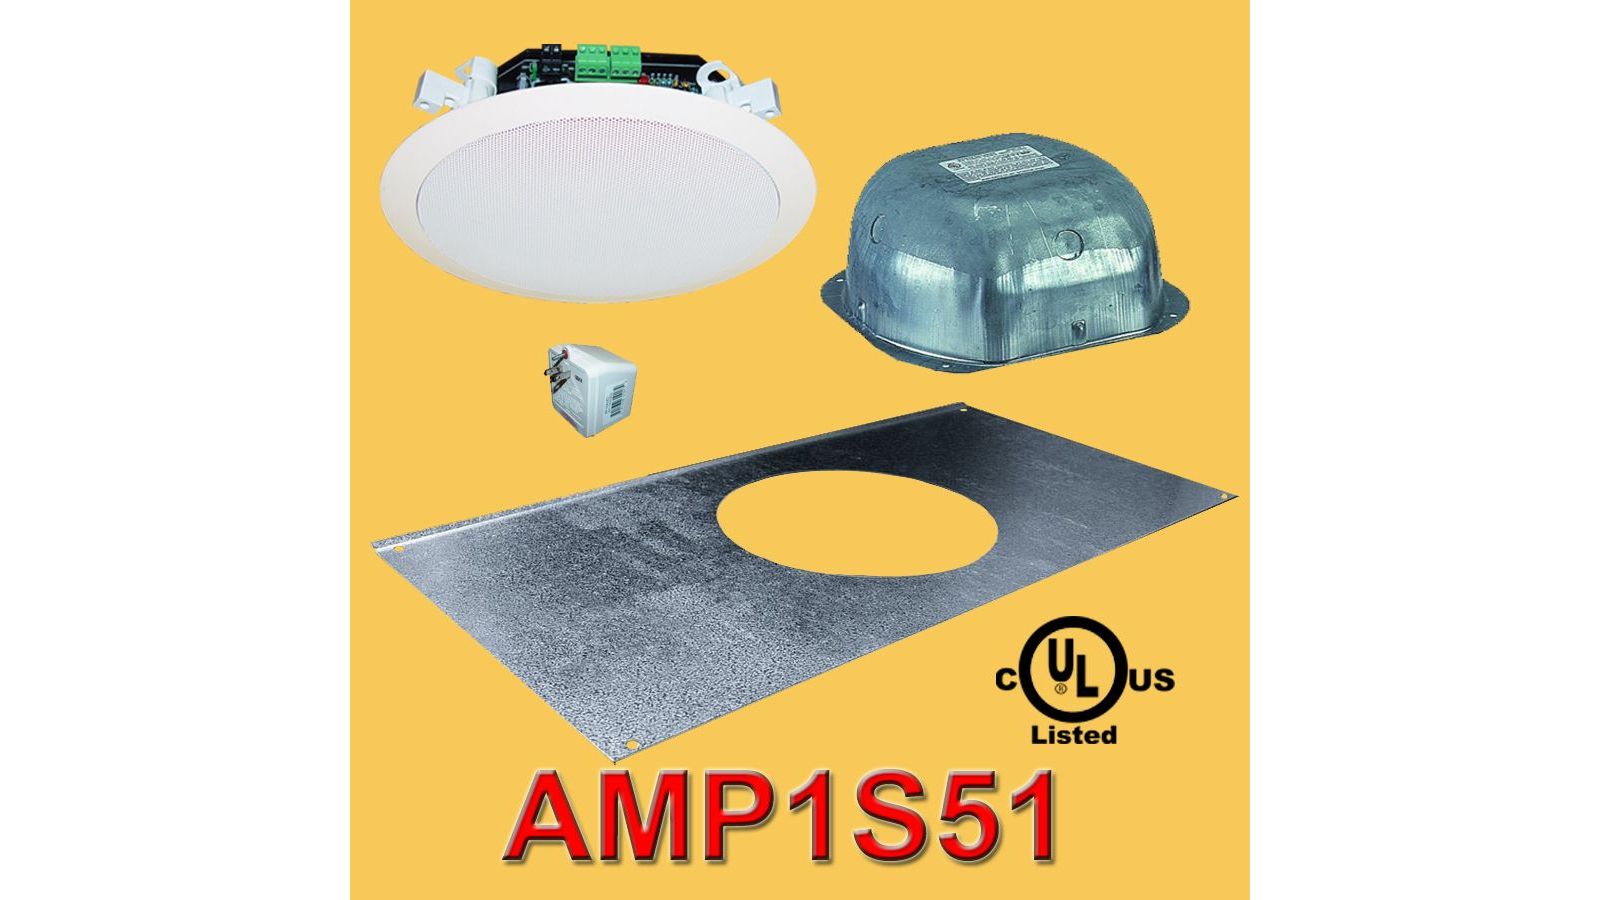 AMP1S51 Amplified Ceiling Speaker Package